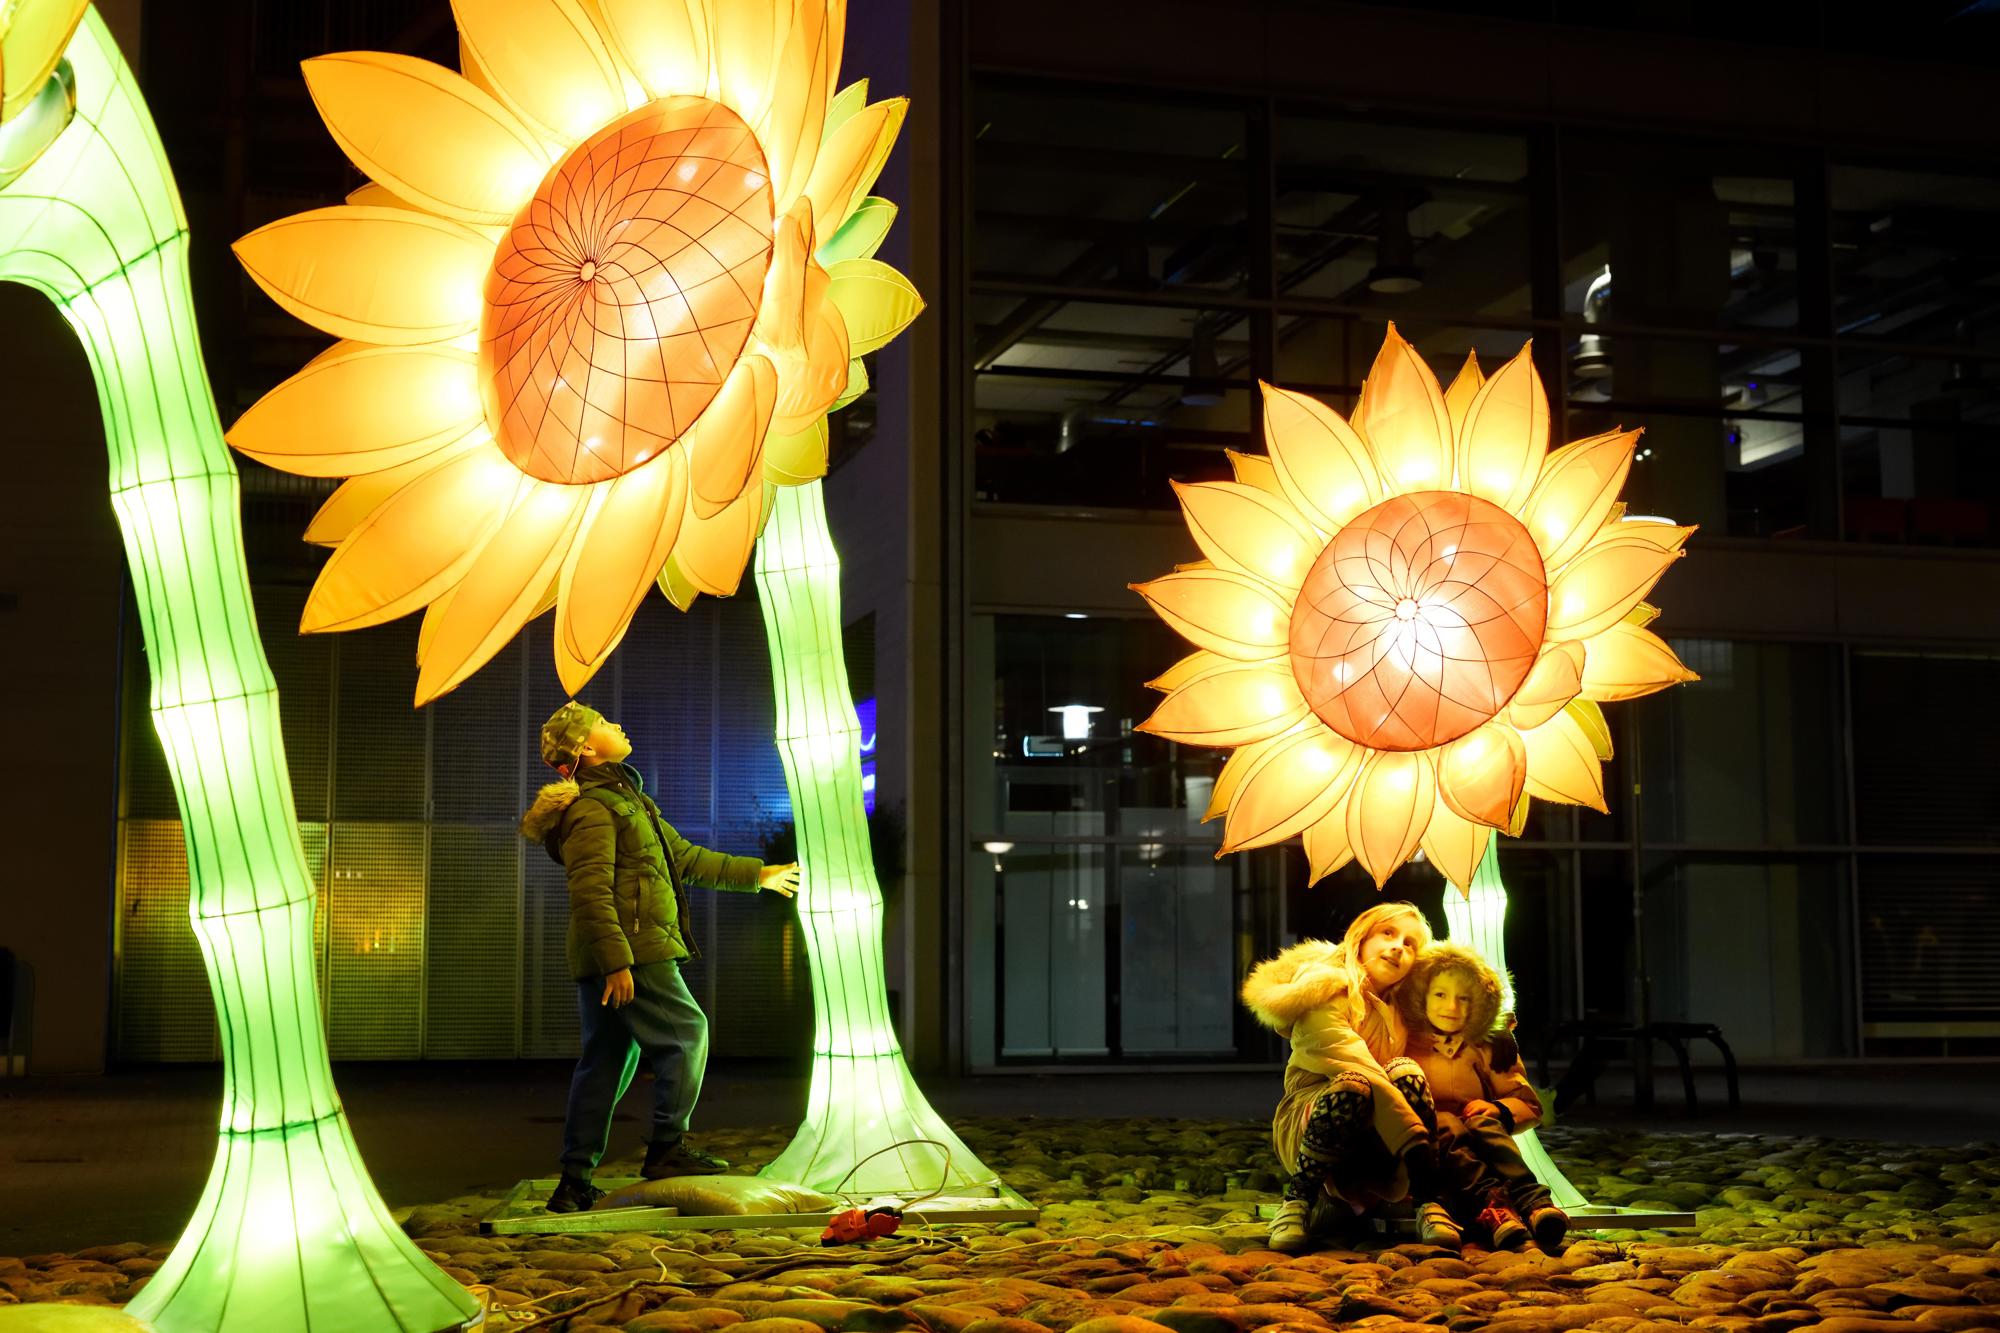 Elk jaar transformeren kunstenaars Eindhoven in GLOW met verrassend design: een stadstentoonstelling van lichtkunst in de open lucht